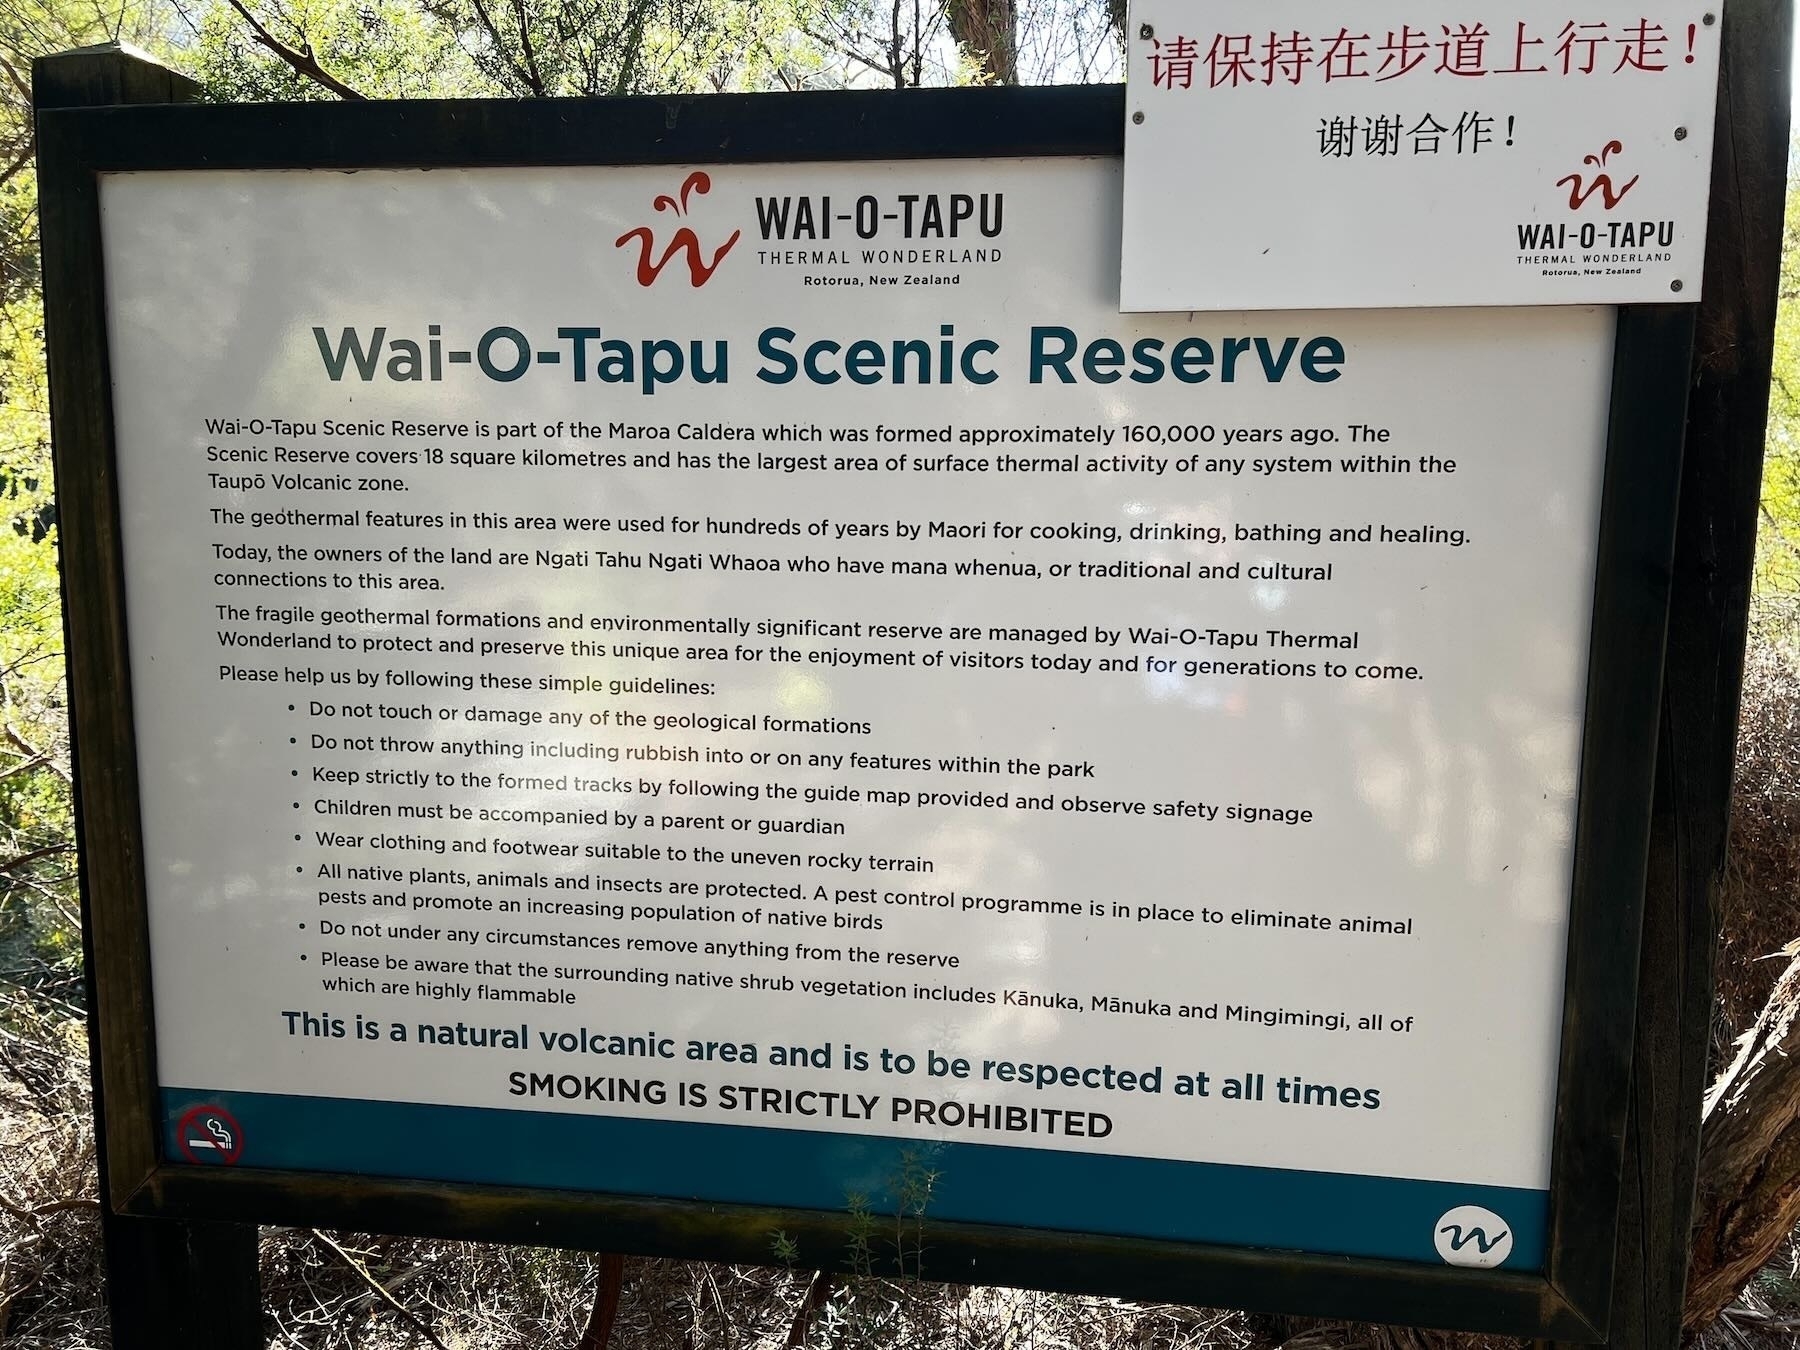 Information board at Wai-o-Tapu.